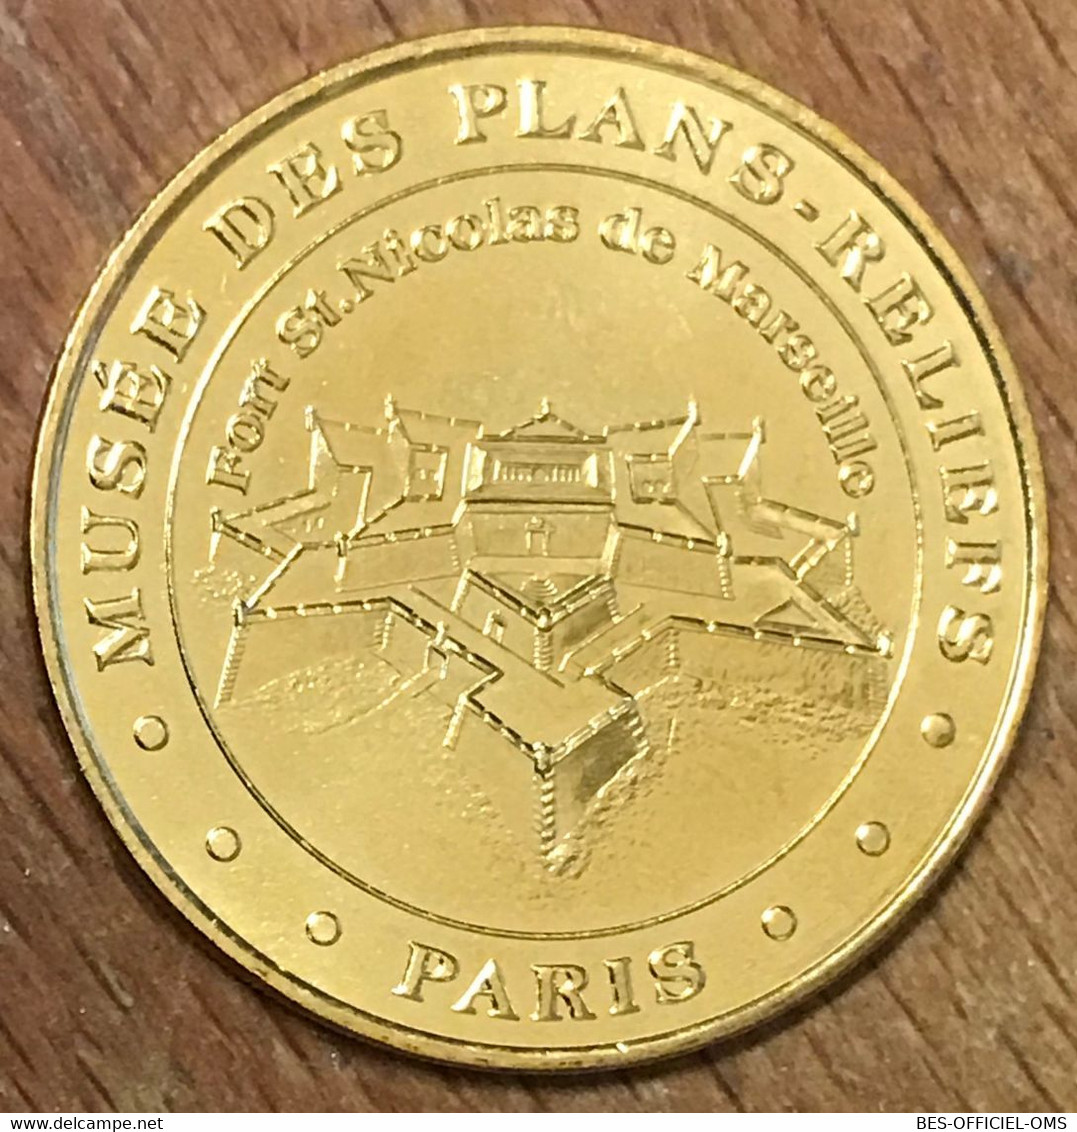 75007 PARIS MUSÉE DES PLANS RELIEFS MARSEILLE MDP 2018 MEDAILLE MONNAIE DE PARIS JETON TOURISTIQUE MEDALS COINS TOKENS - 2018